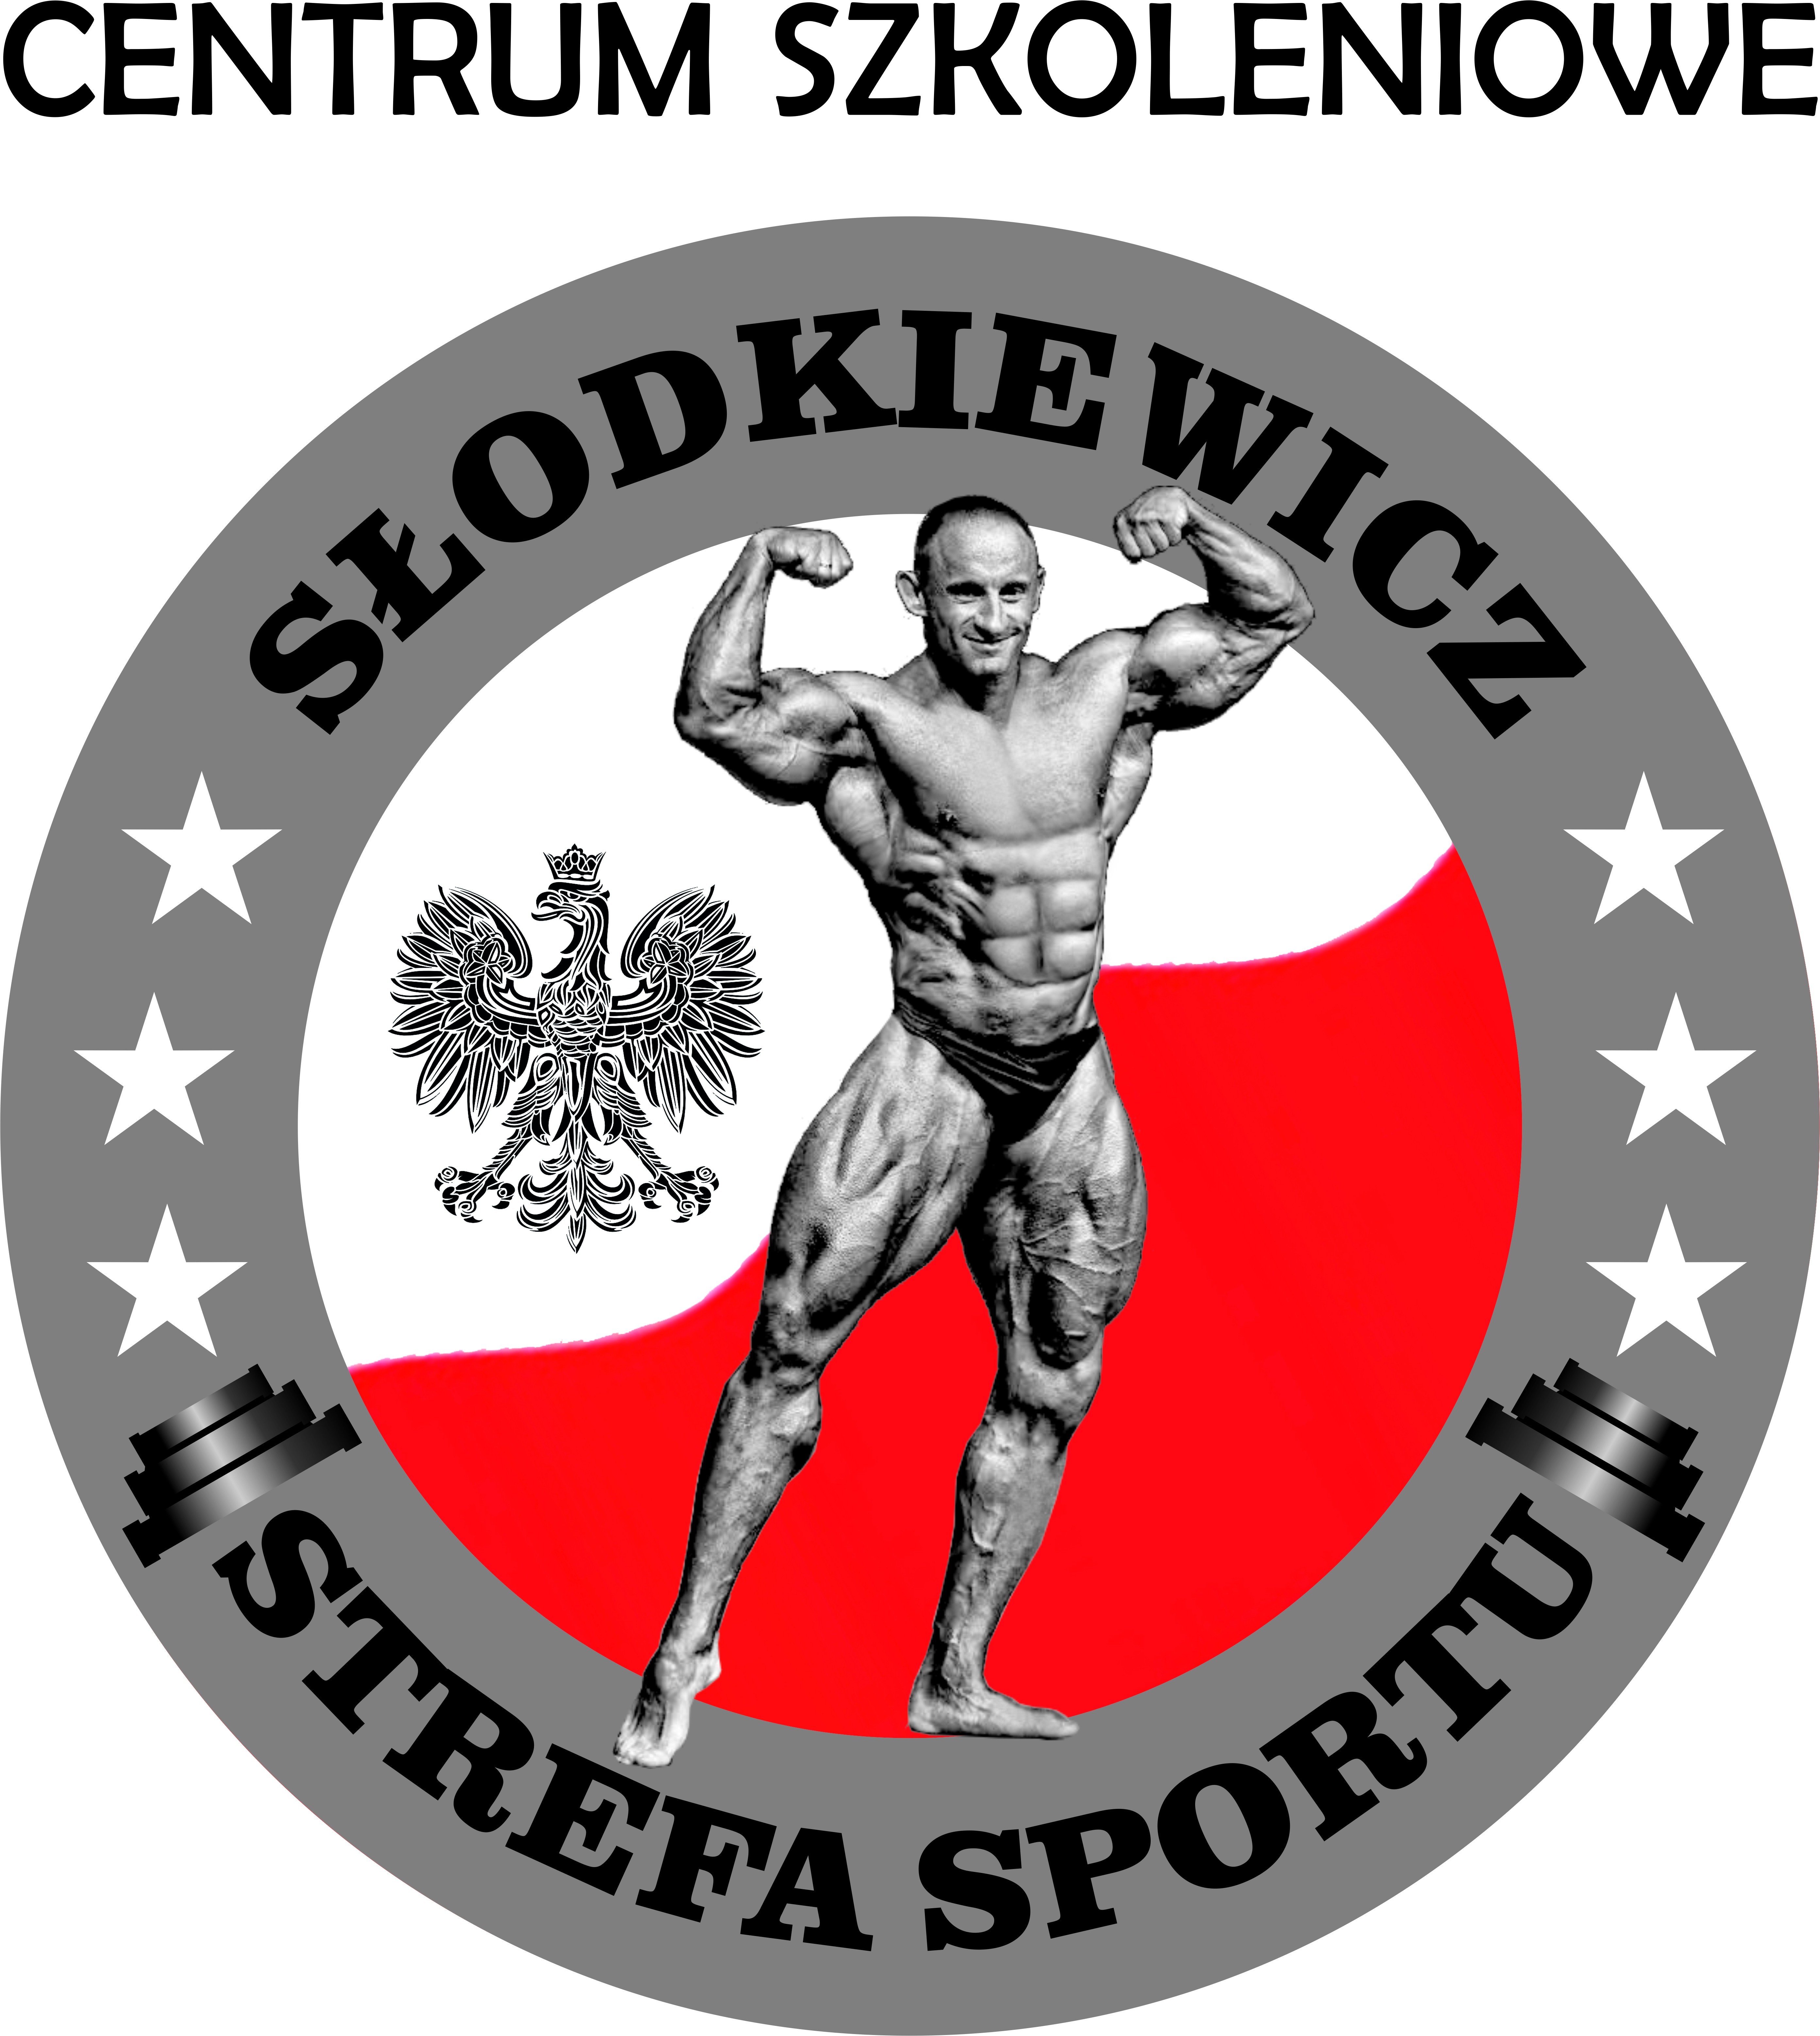 Kursy Słodkiewicz